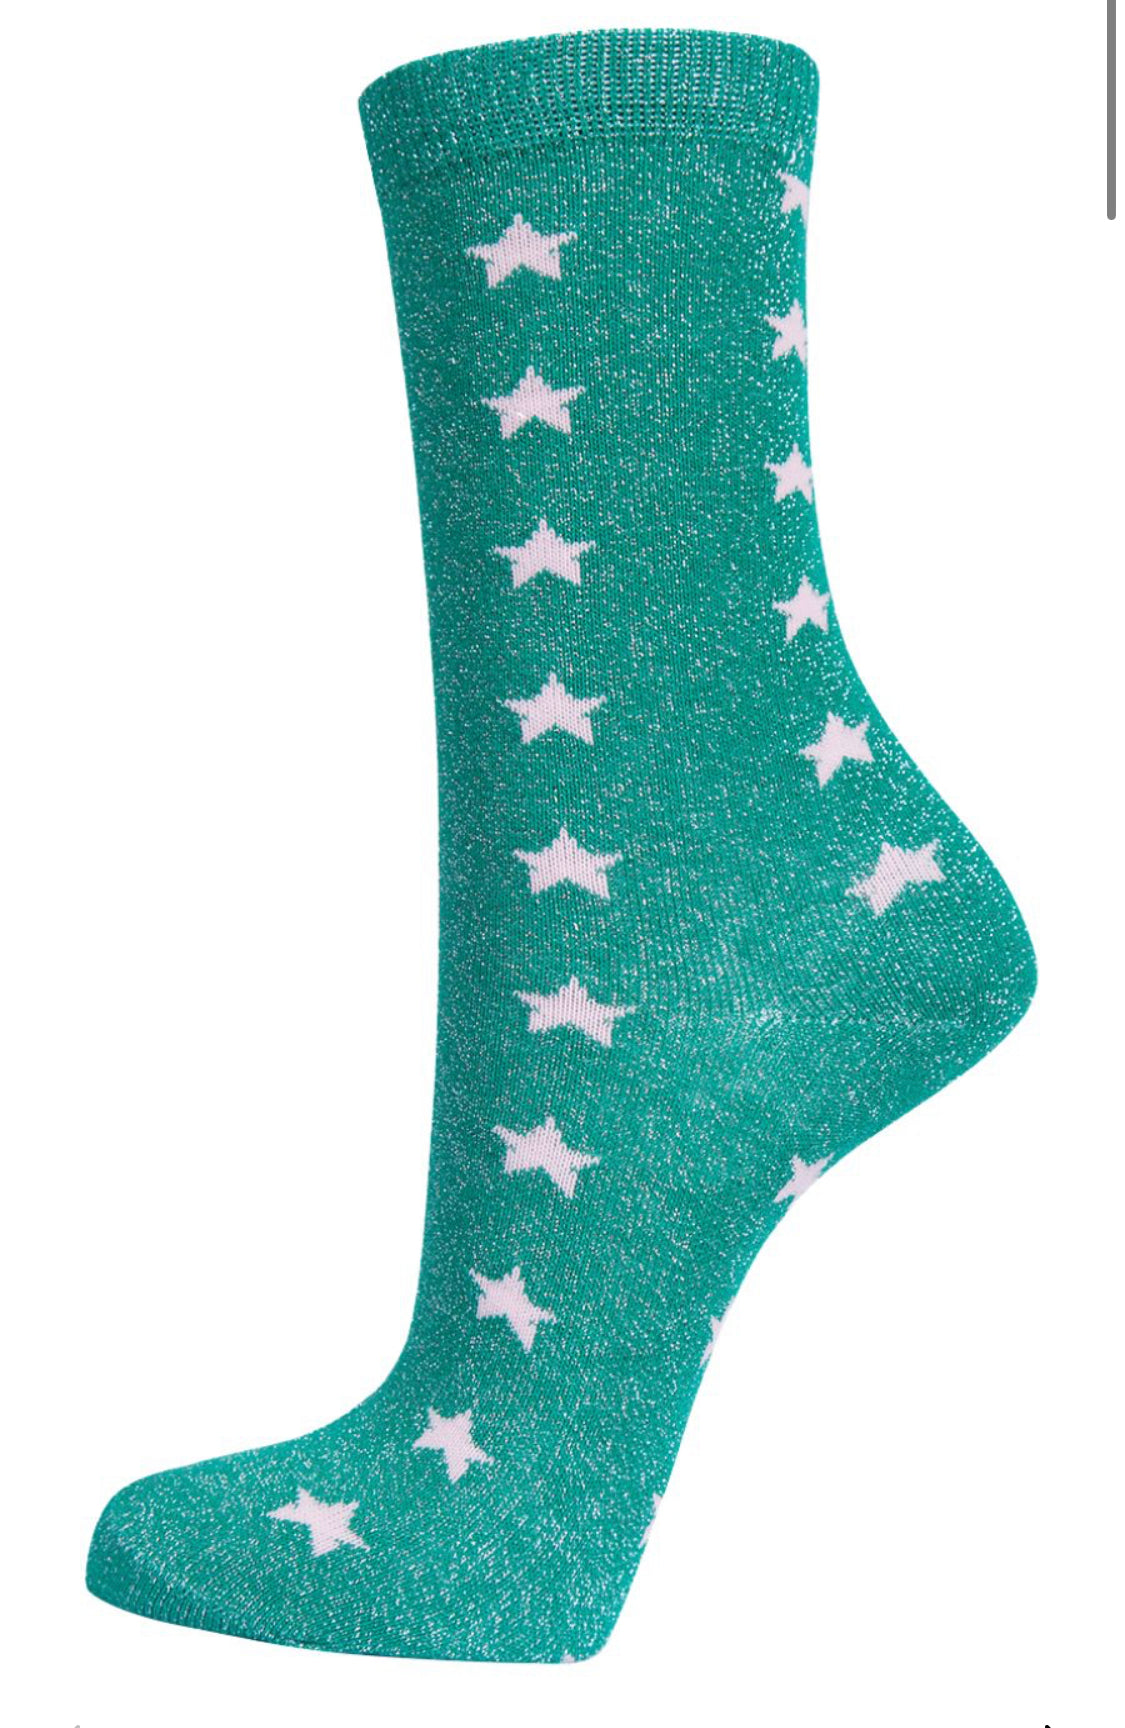 Green Glitter Socks with Stars